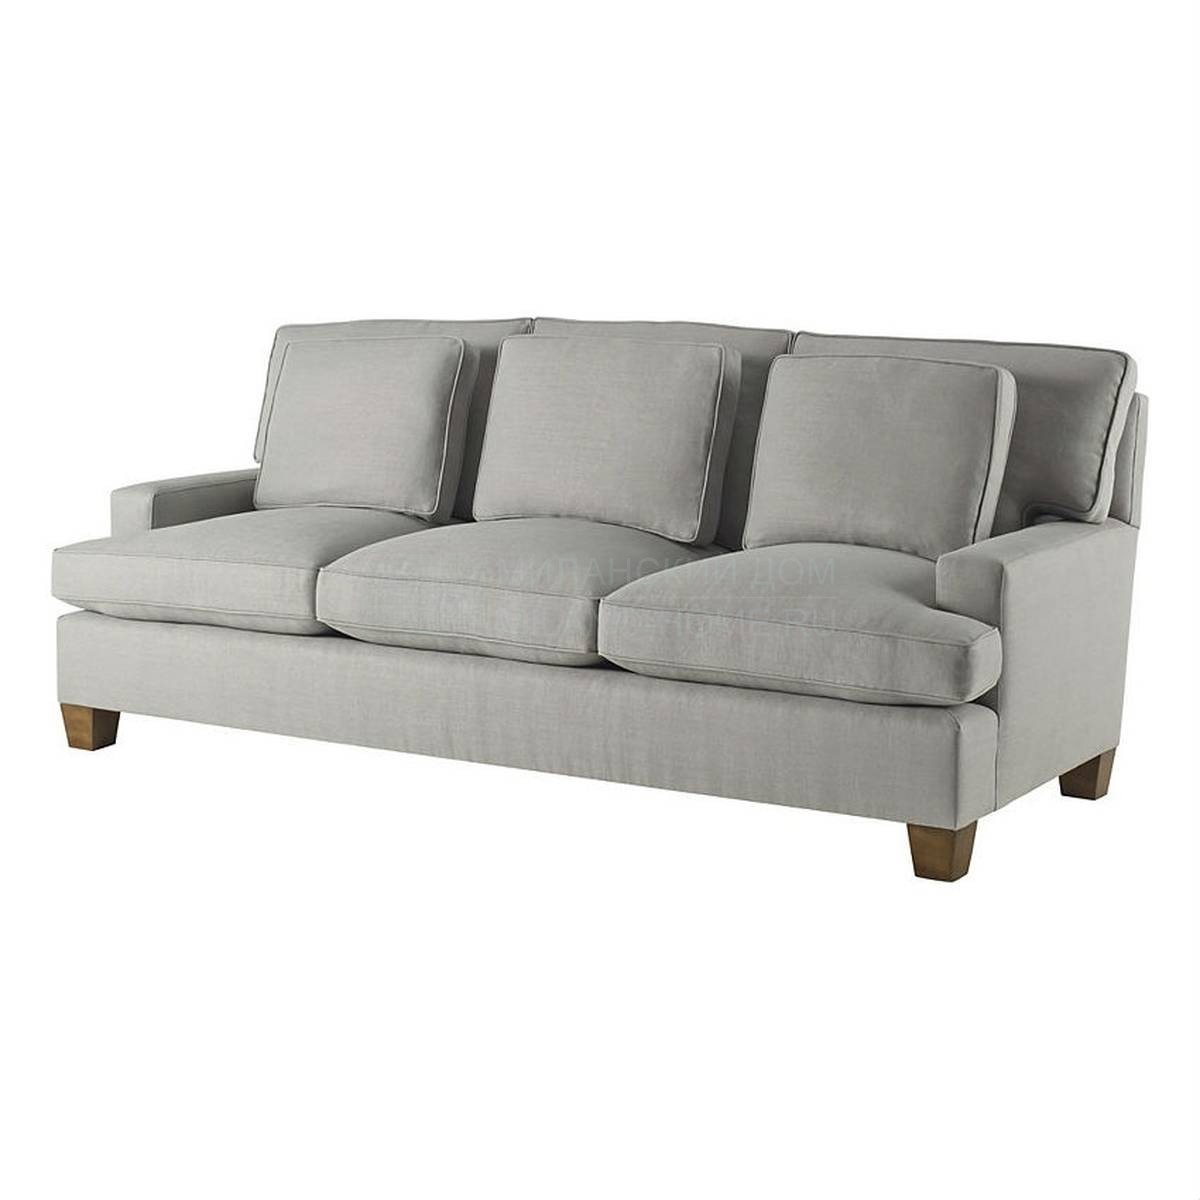 Прямой диван Modern sofa из США фабрики BAKER